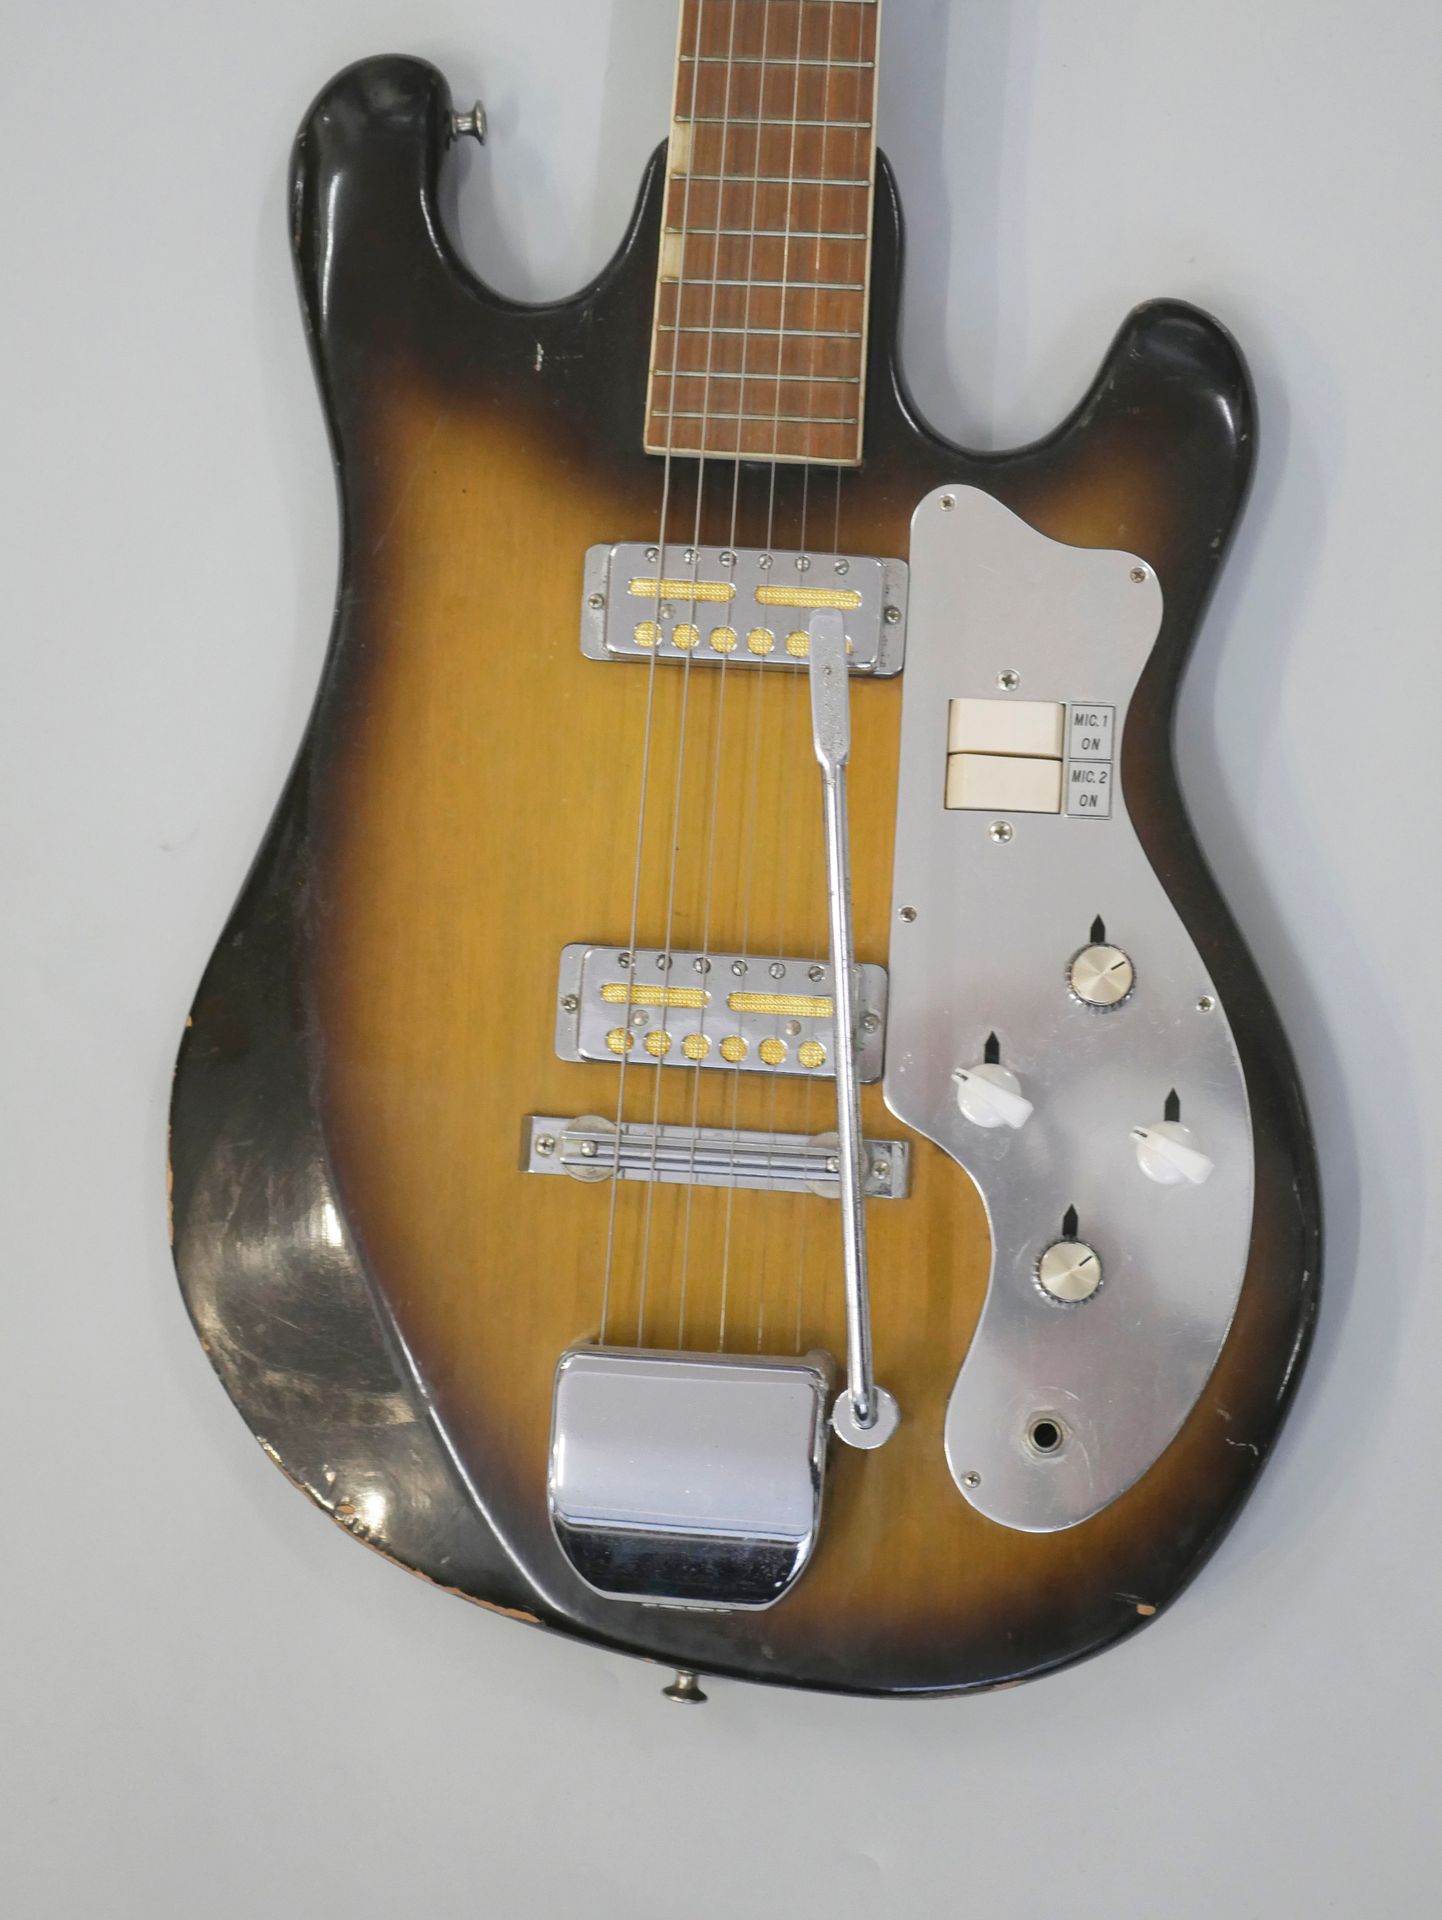 Null Guitare électrique Solidbody de marque Kent modèle 431, made in Japan ca. 1&hellip;